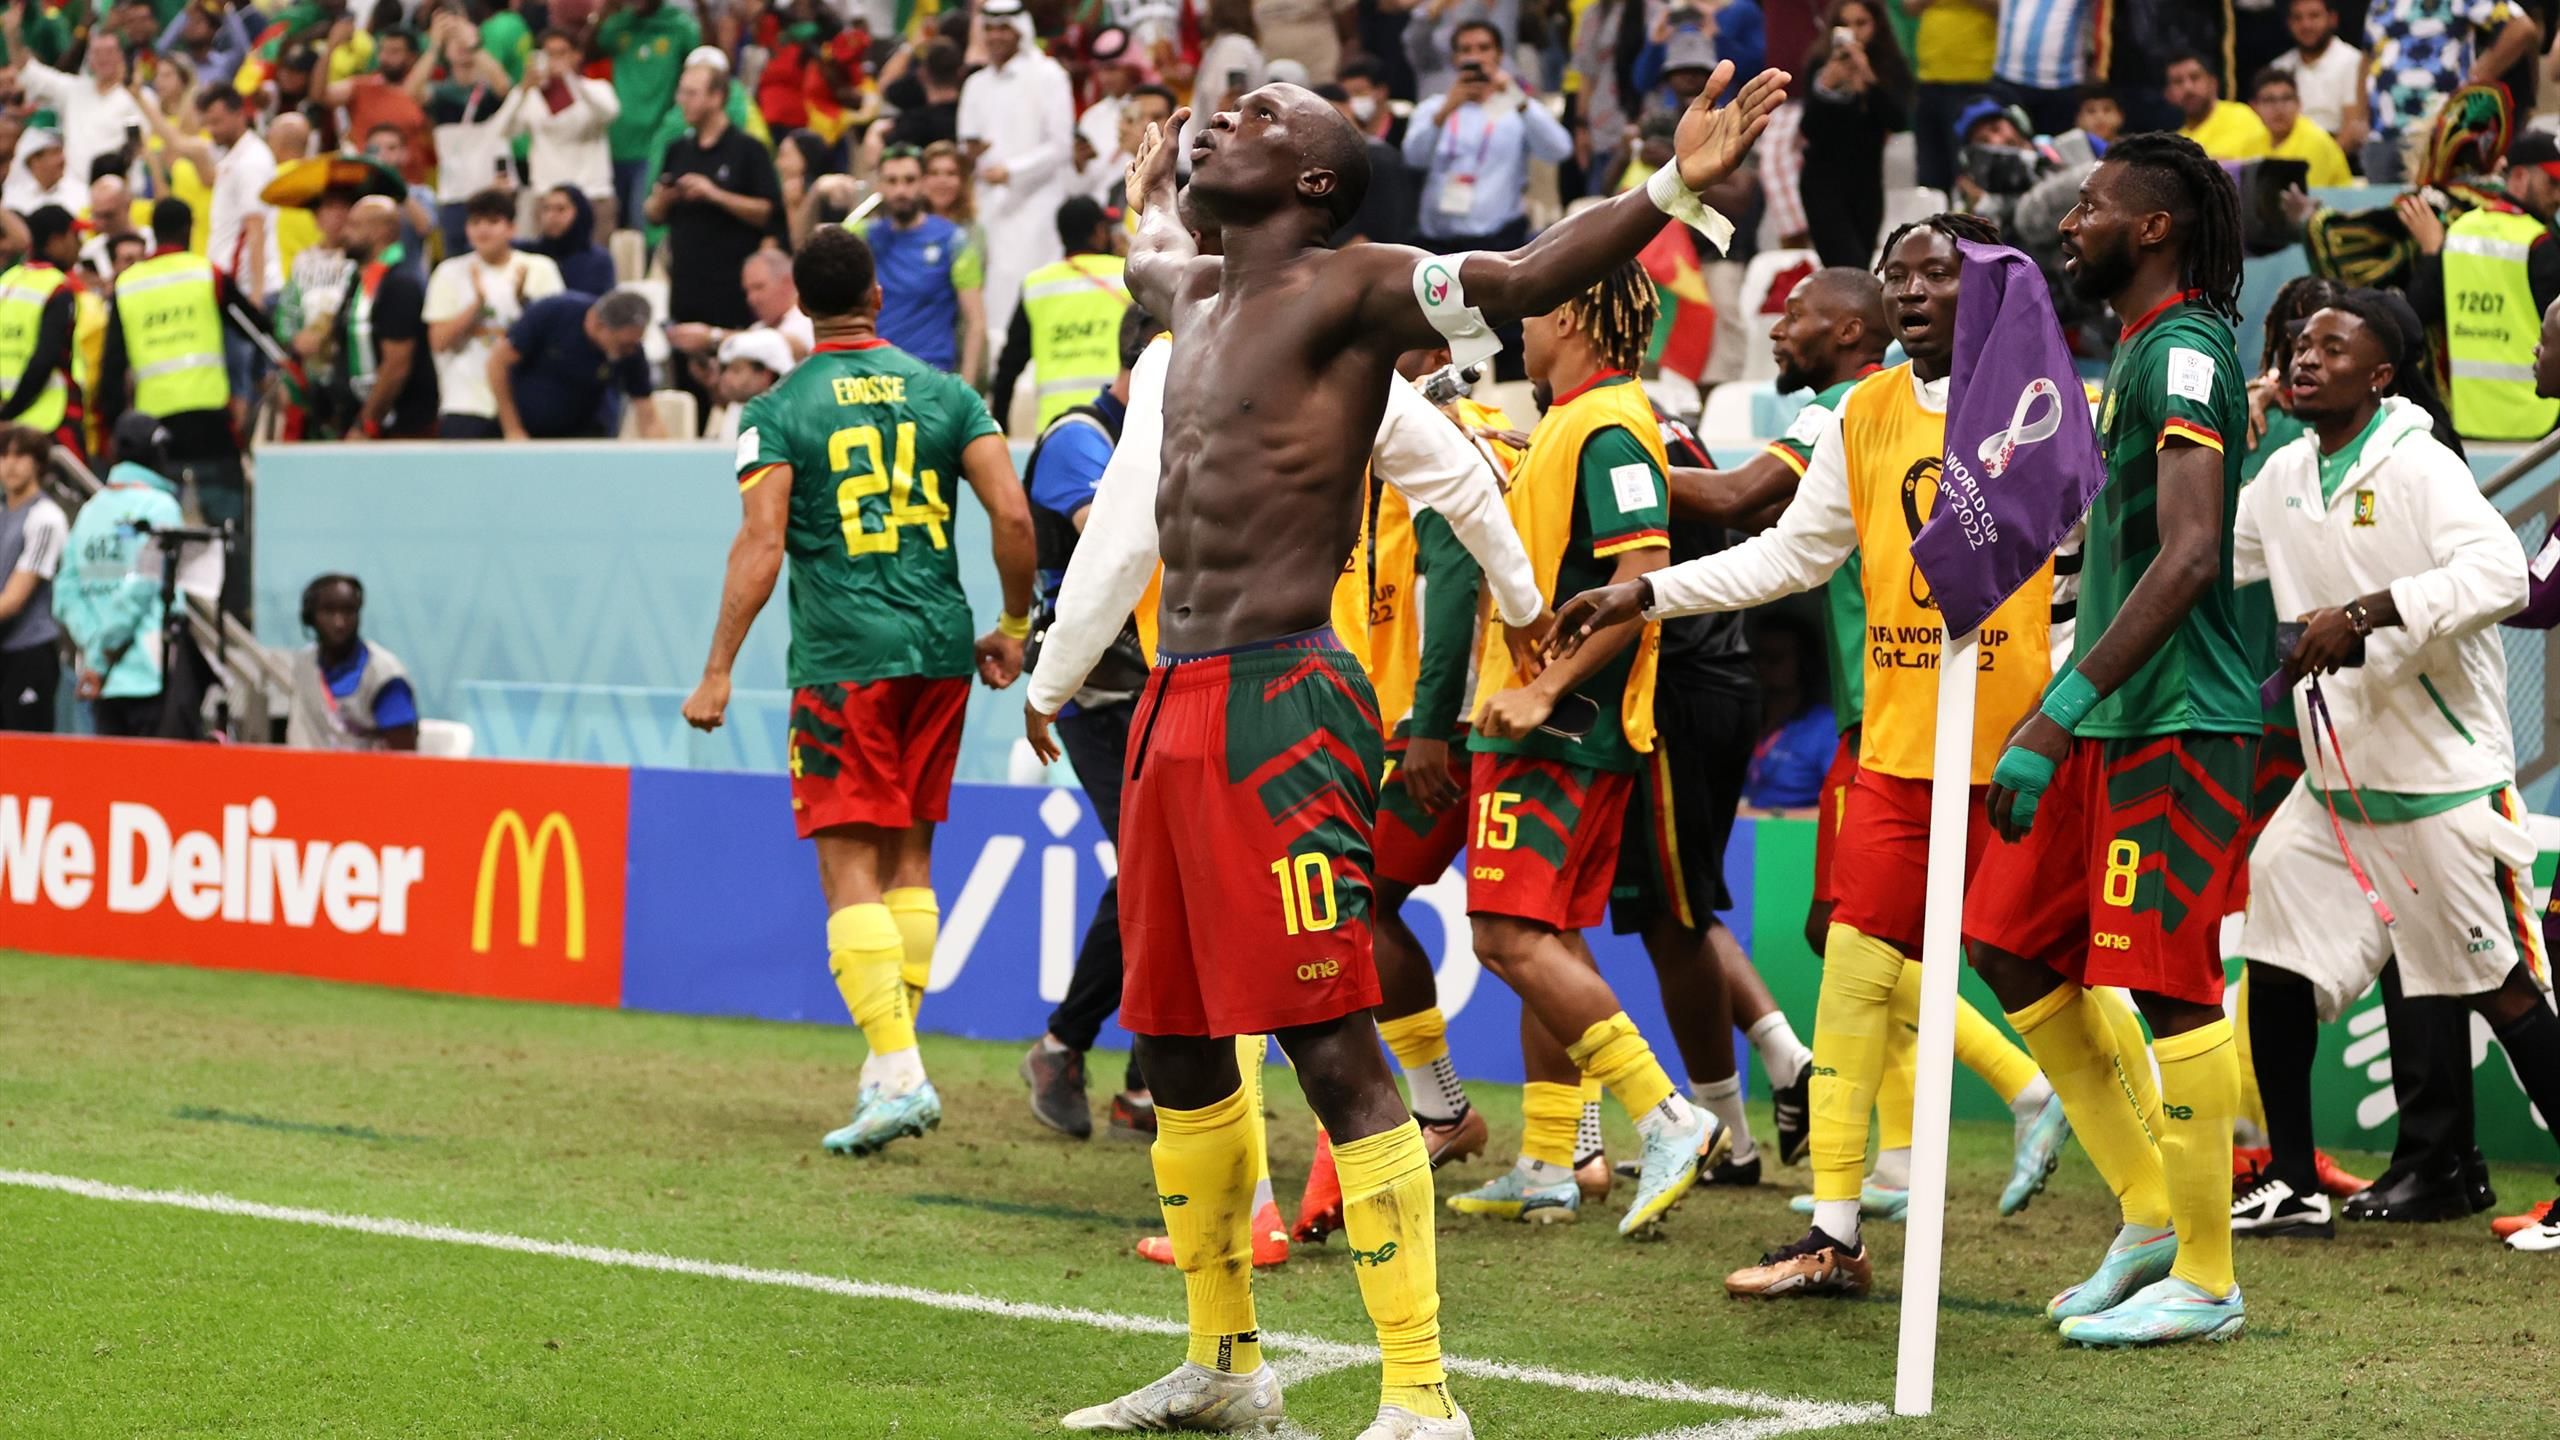 WM 2022 - Treffer in der Nachspielzeit Kamerun feiert Achtungserfolg gegen Brasilien - und fliegt raus